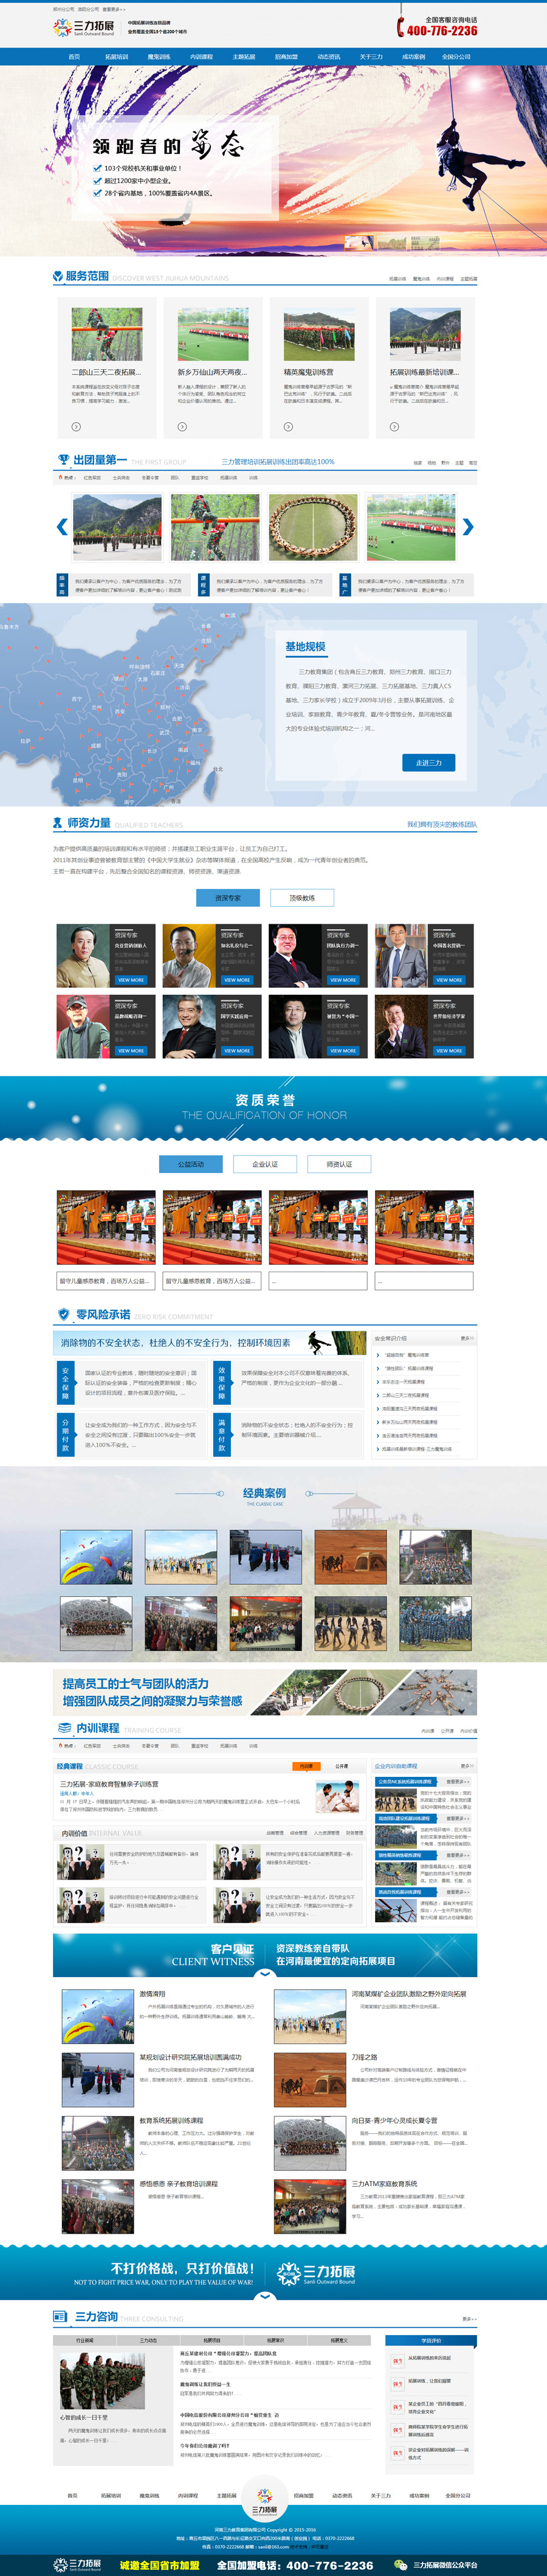 郑州三力拓展营销型网站建设